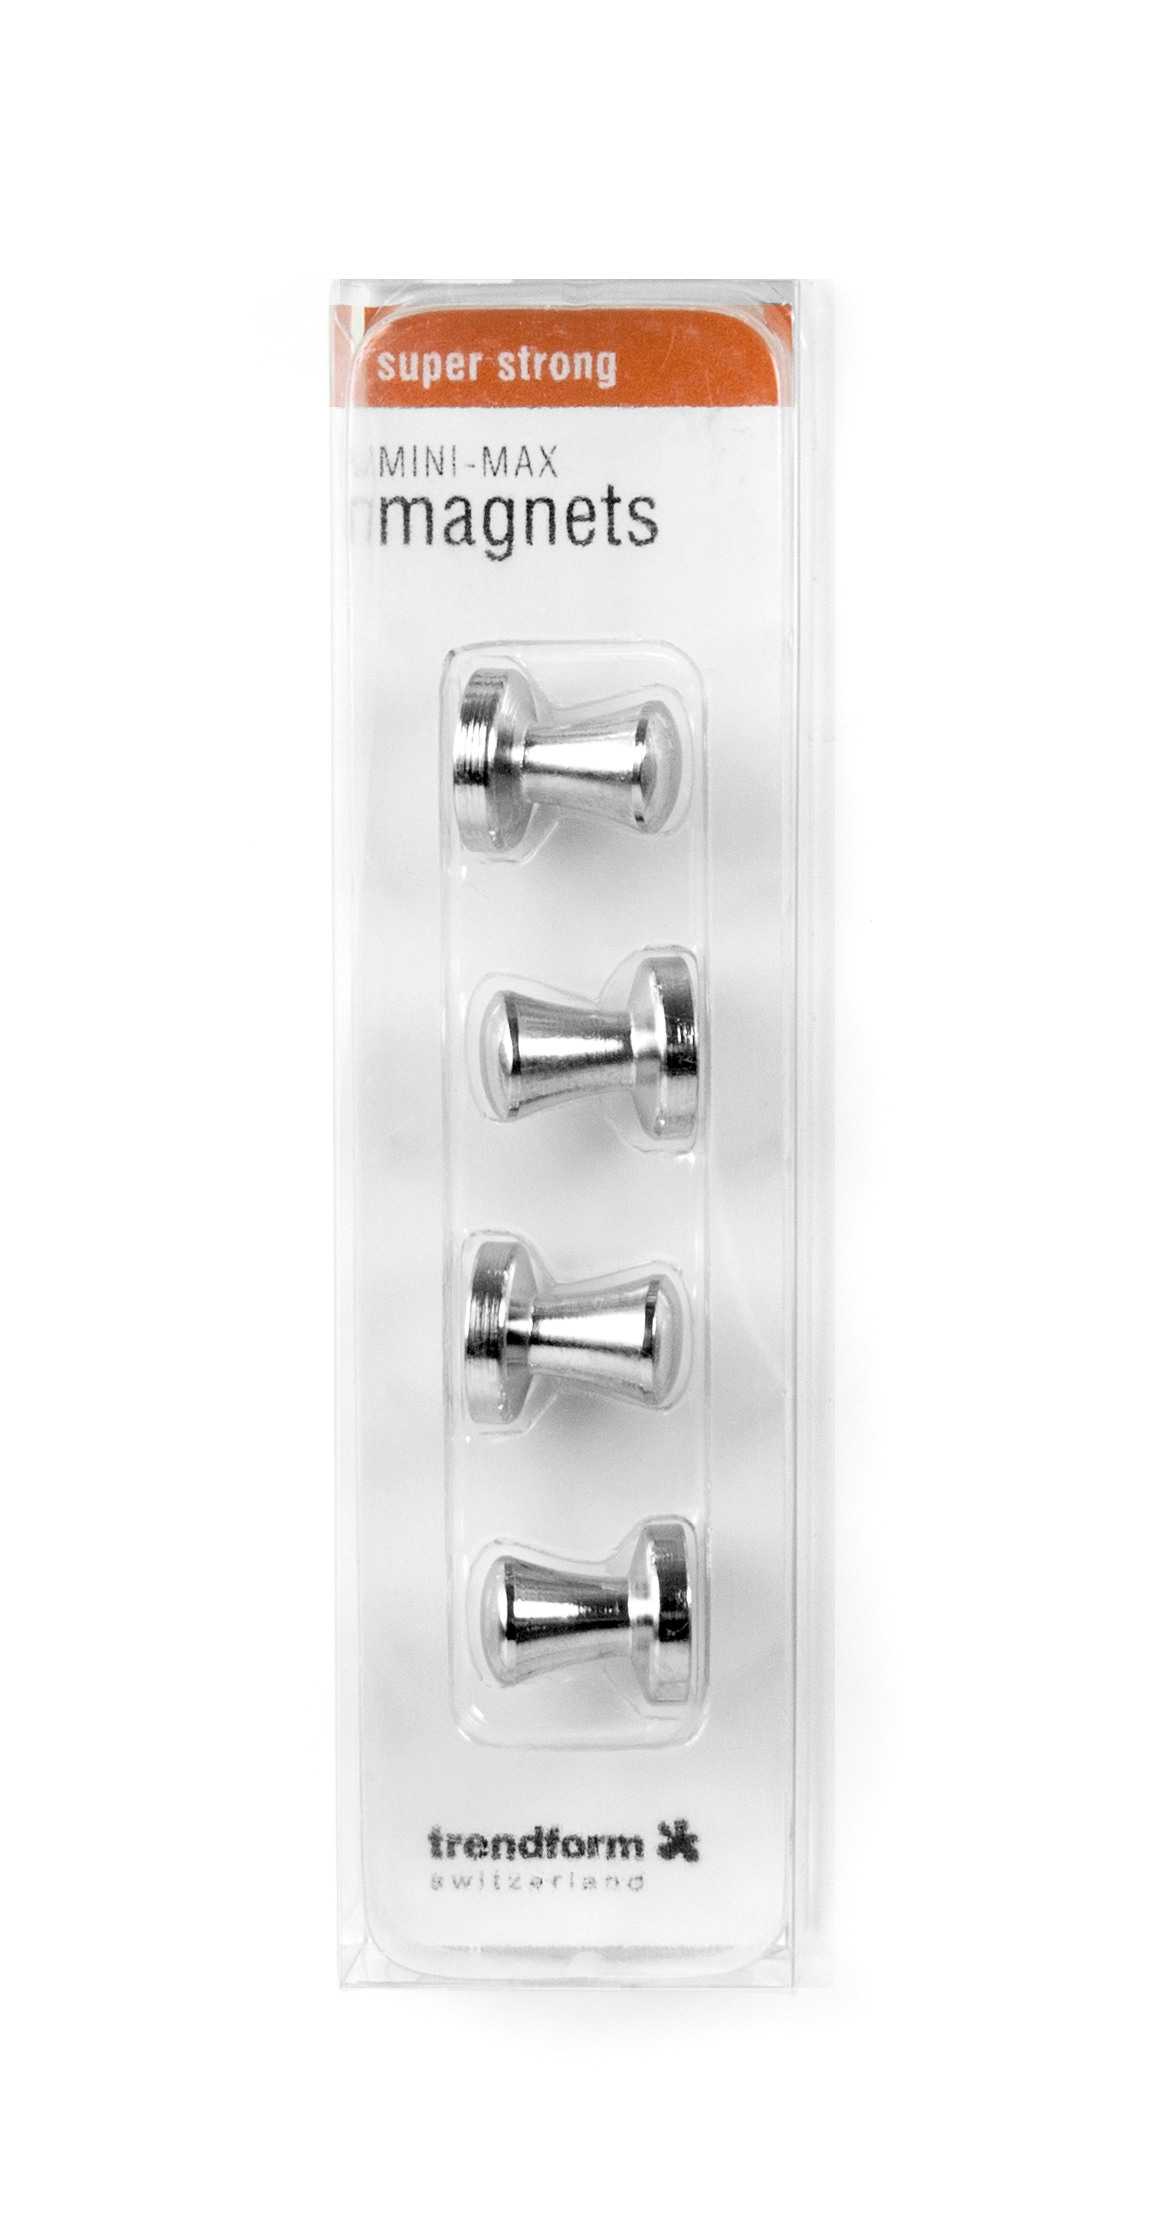 TRENDFORM Superstrong Magnets MINI-MAX MM2021 set de 4 argenté